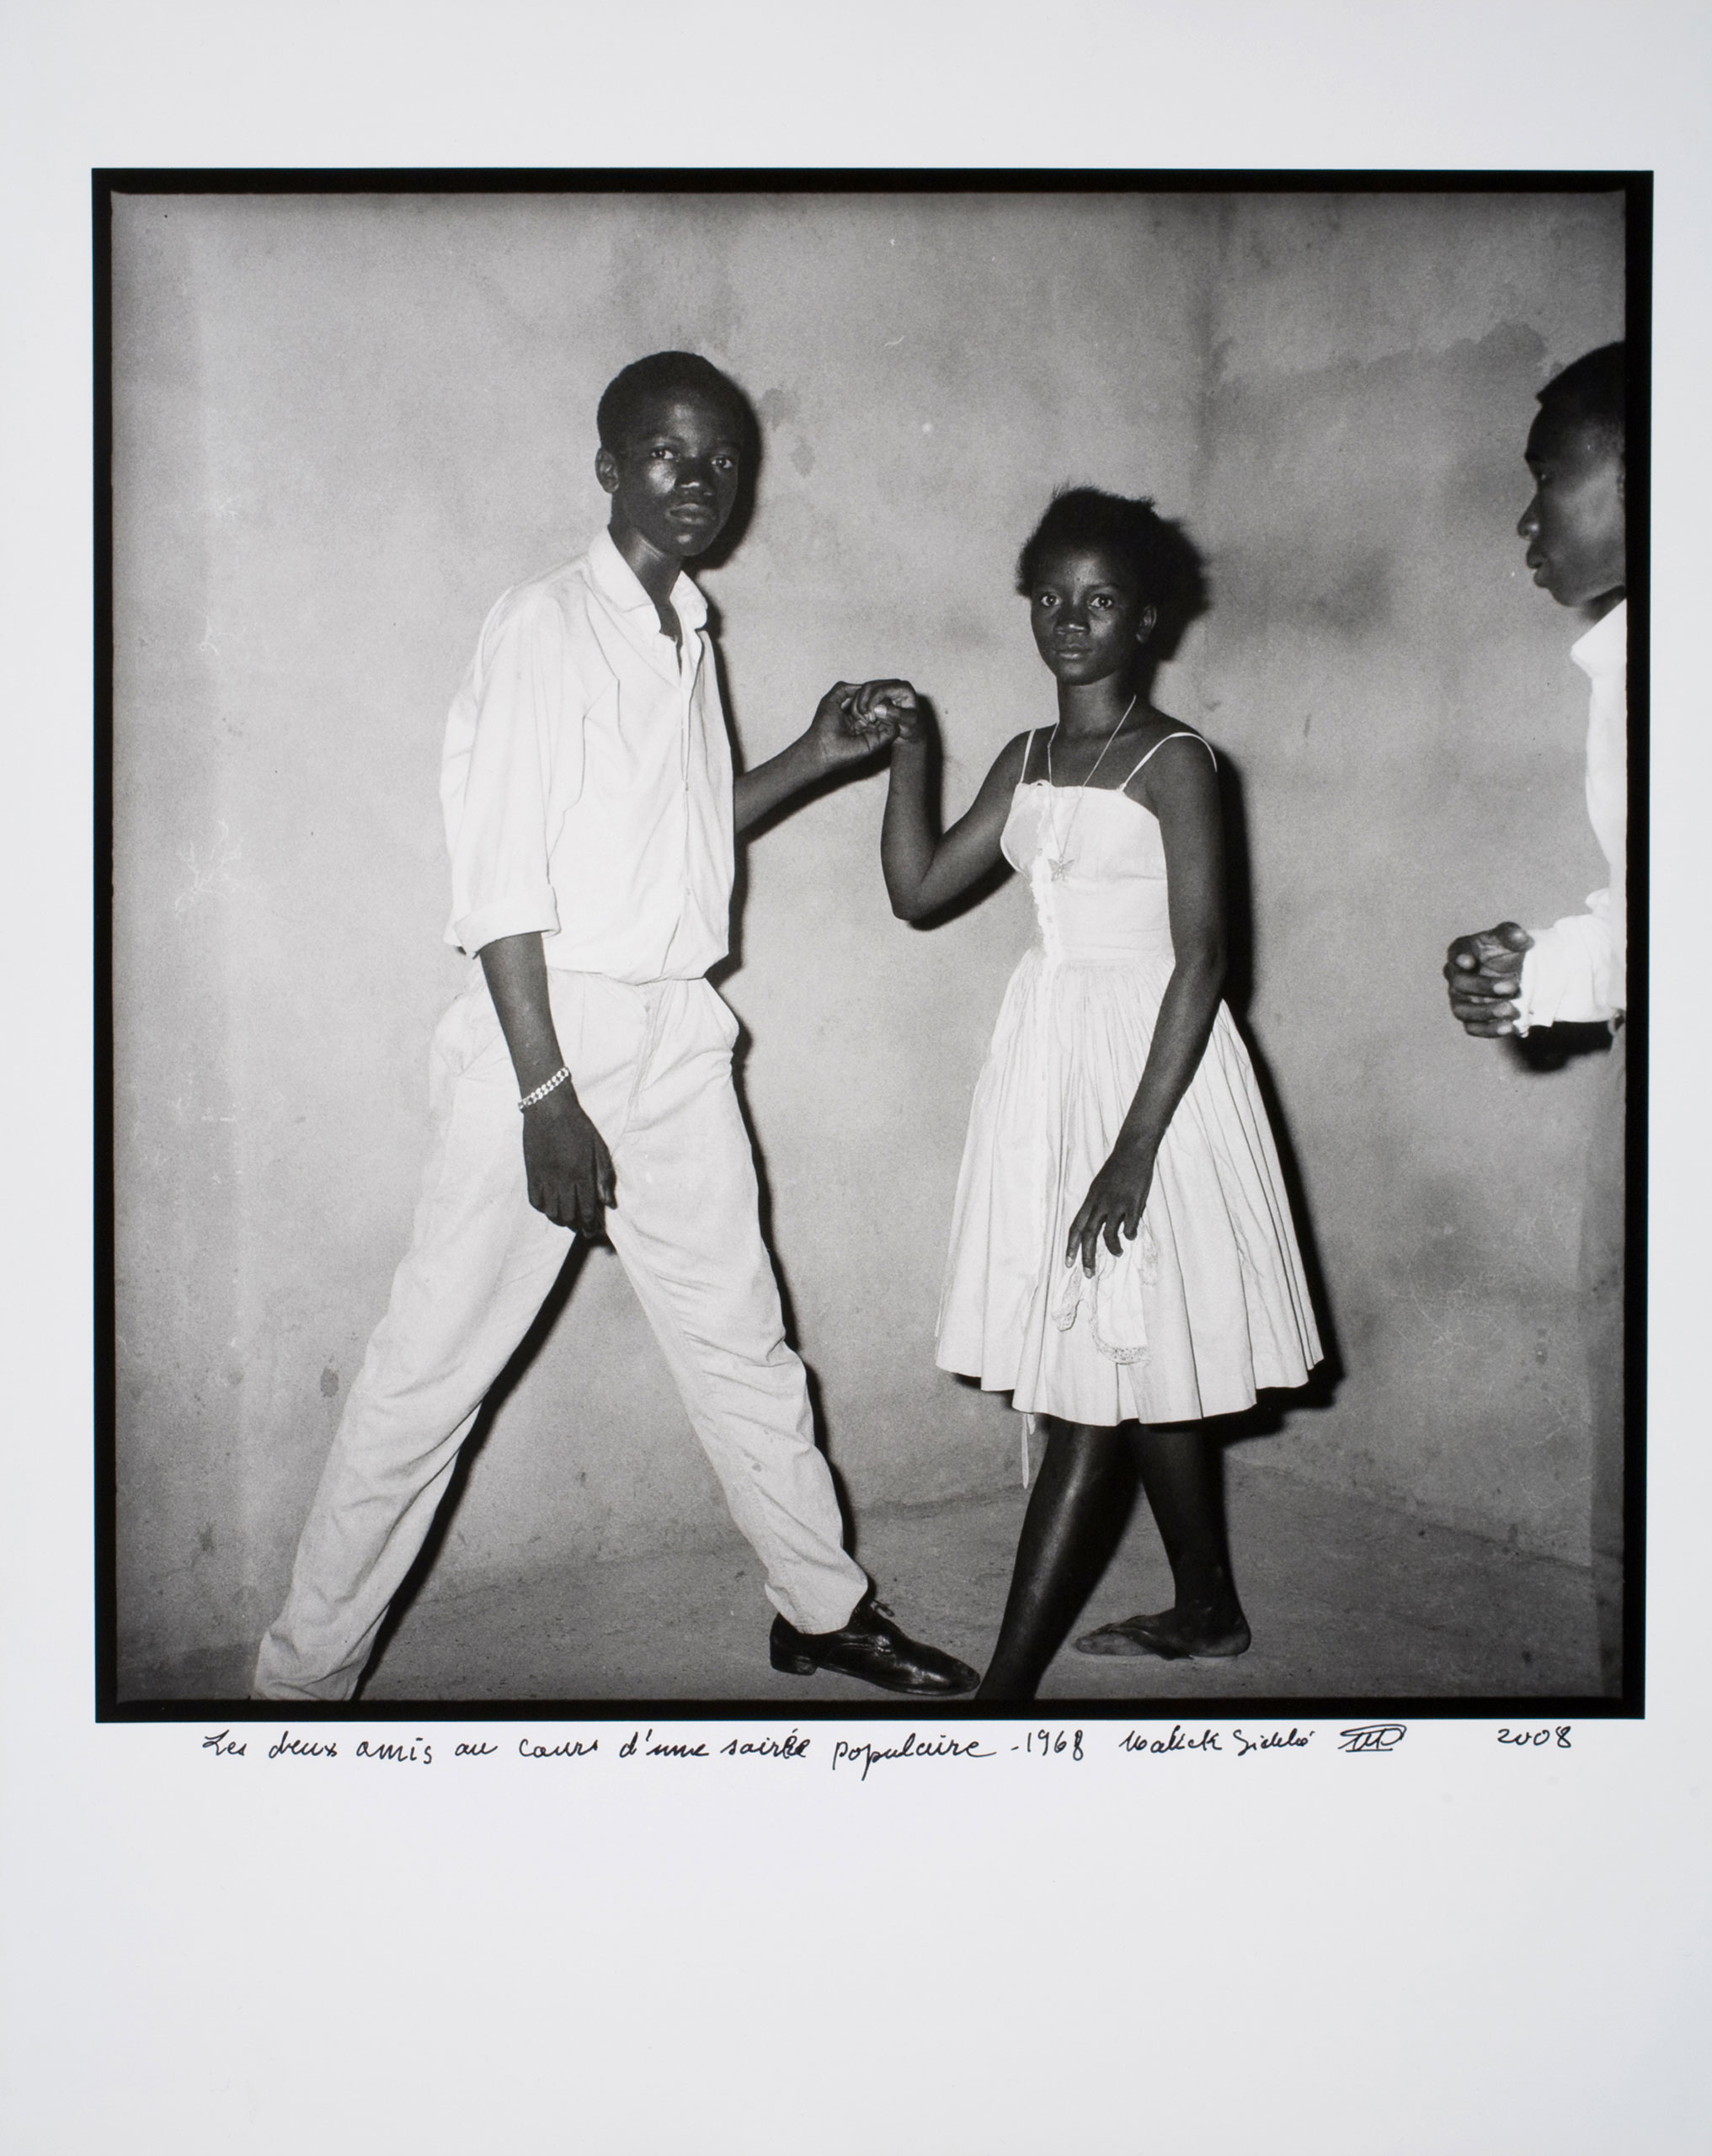 Photograph by Malick Sidibe, Les deux amis au cours d'une soirée populaire, 1968-2008.